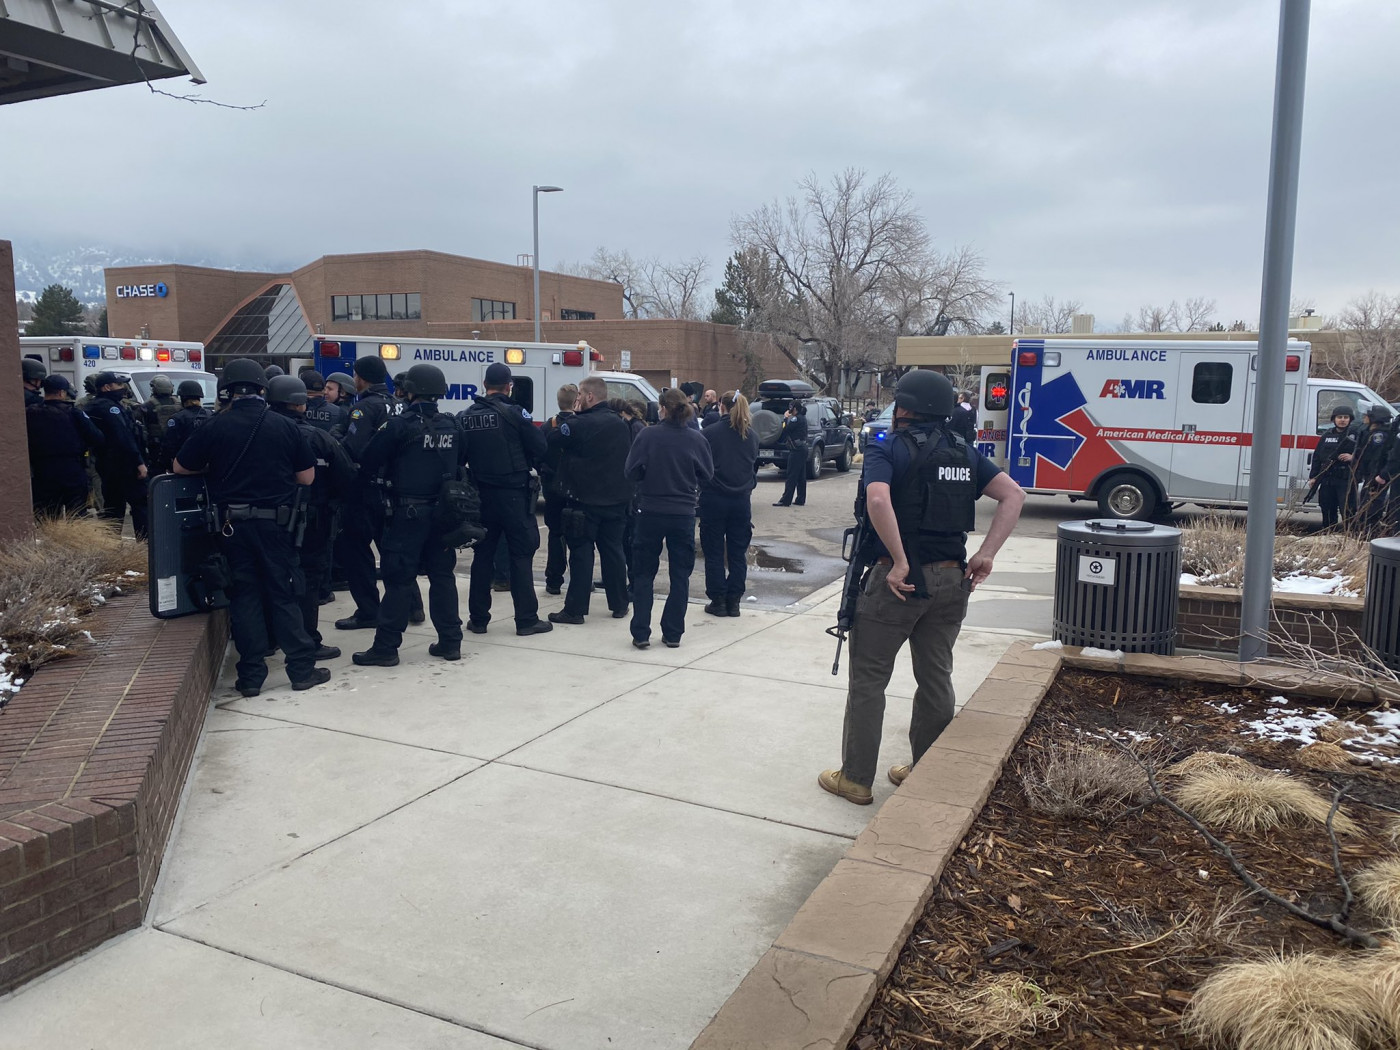 Agentes da Polícia de Boulder agindo durante tiroteio